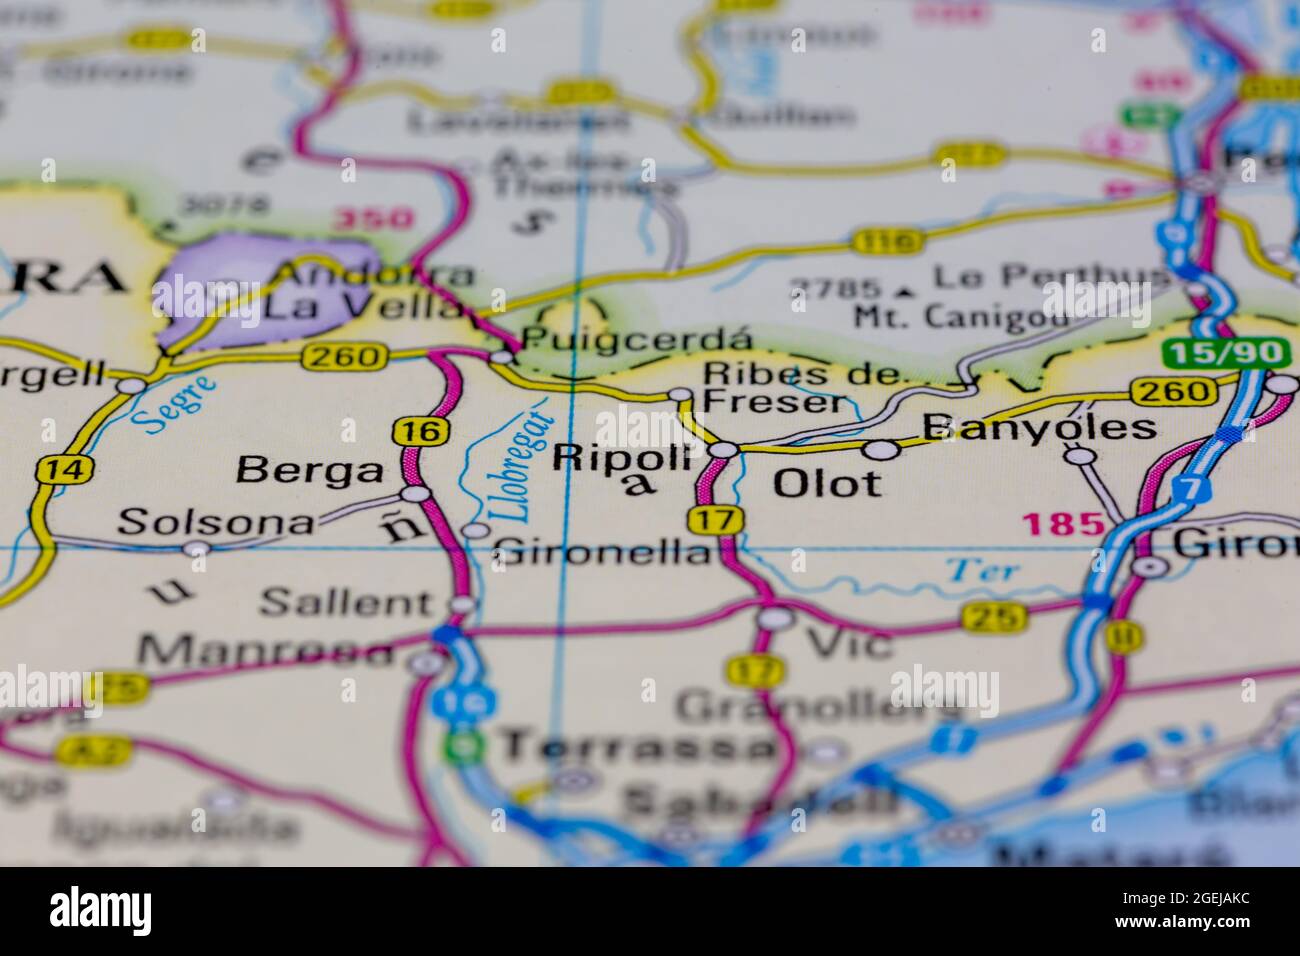 Ripoll España se muestra en un mapa de carreteras o mapa geográfico Foto de stock